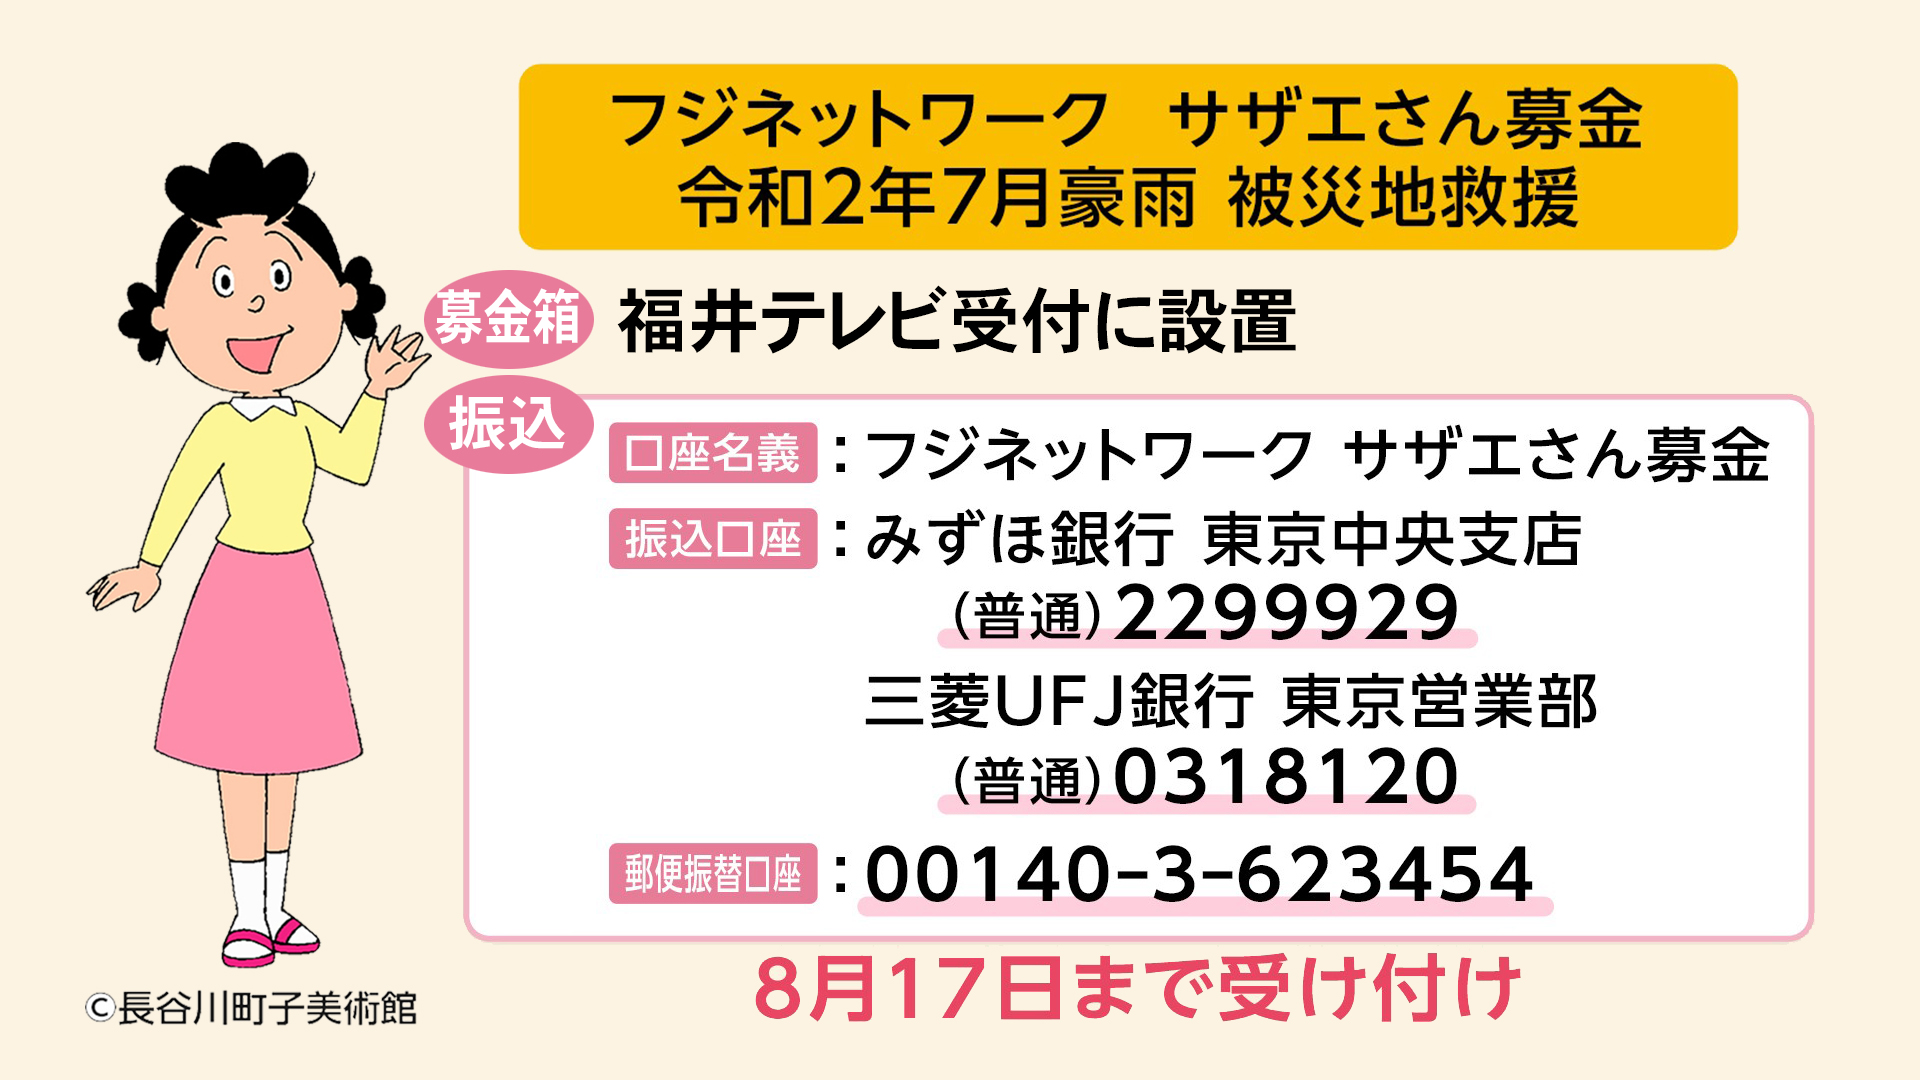 フジネットワーク サザエさん募金 令和2年7月豪雨 被災地救援について お知らせ 福井テレビ